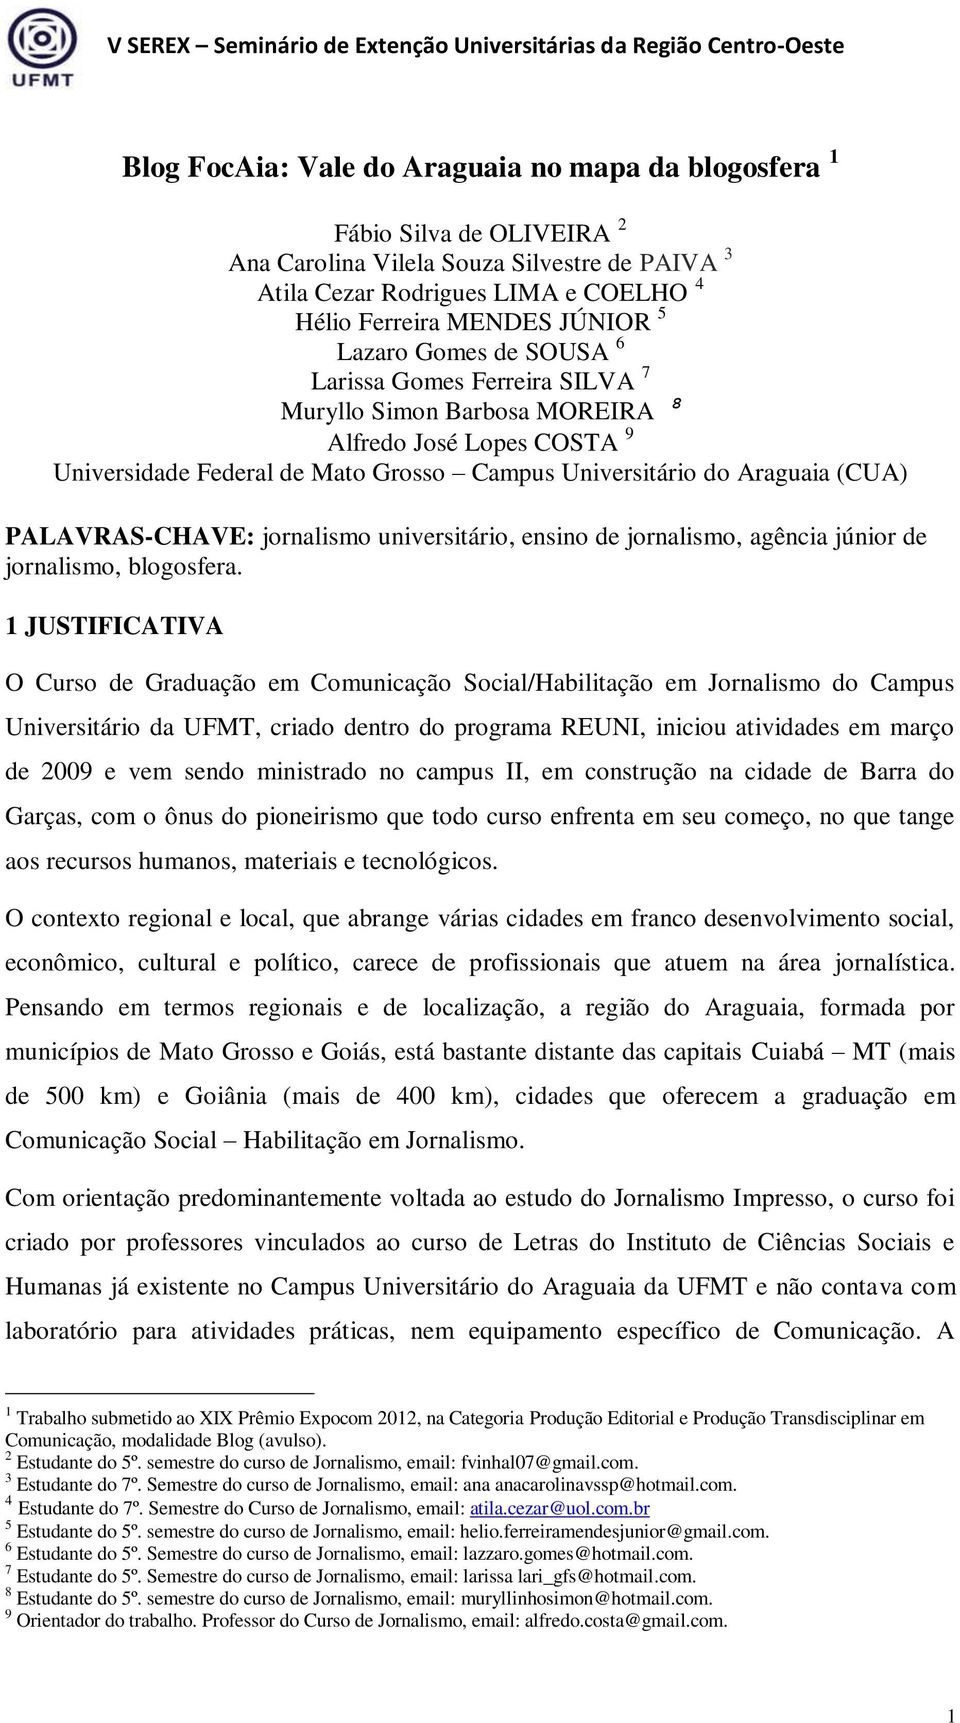 PALAVRAS-CHAVE: jornalismo universitário, ensino de jornalismo, agência júnior de jornalismo, blogosfera.